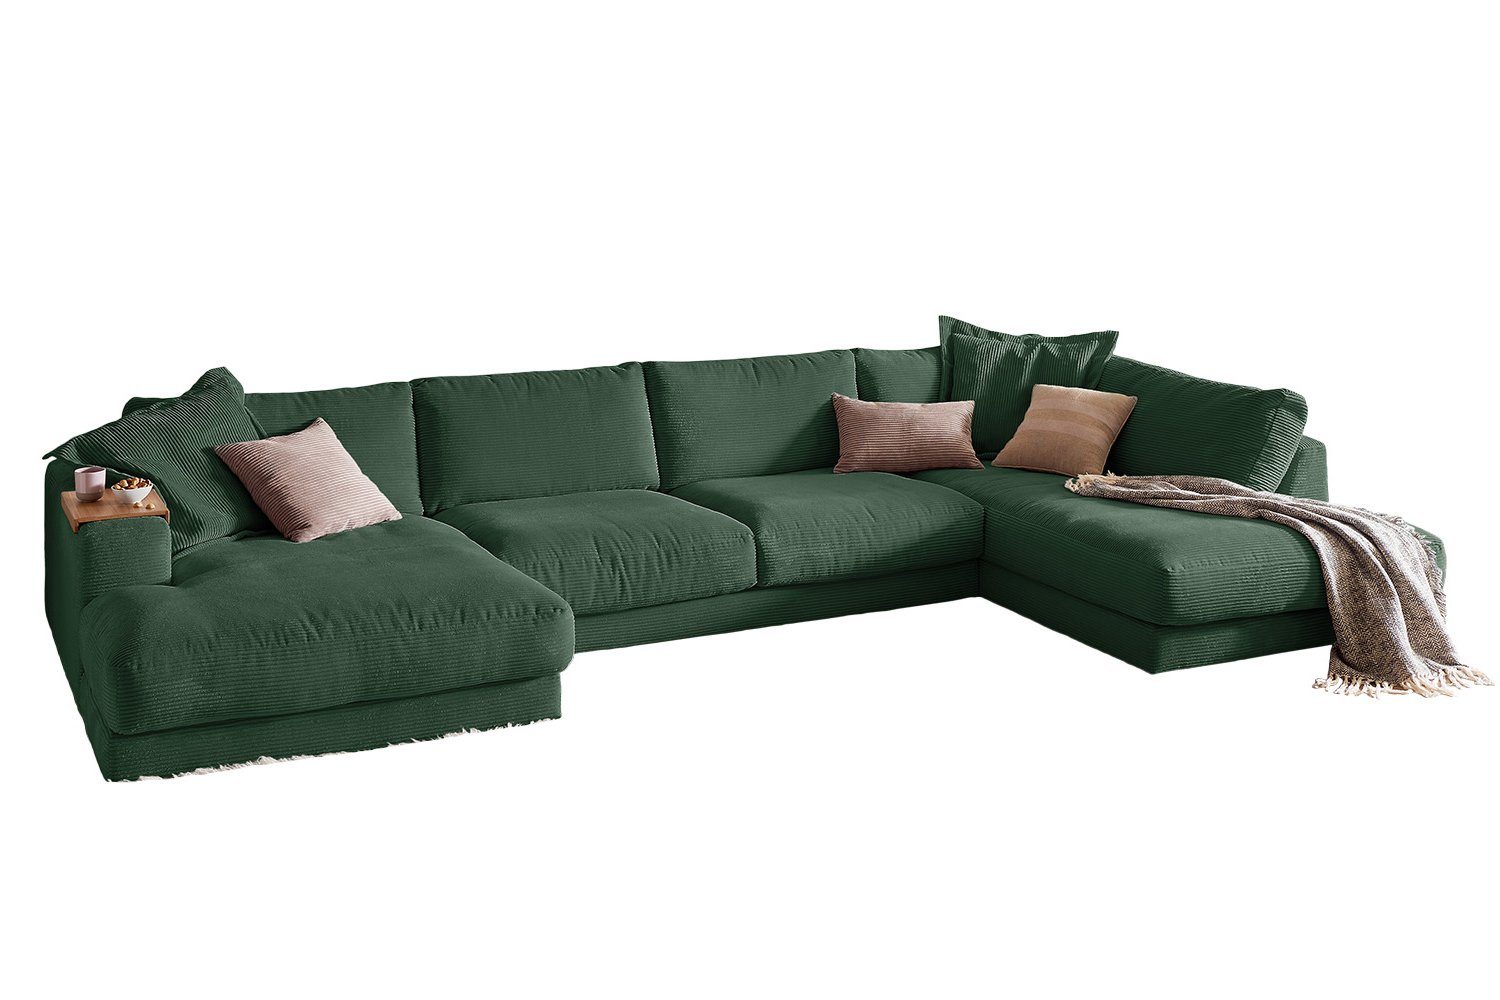 KAWOLA Cord, Farben versch. Longchair links, rechts Sofa MADELINE, Wohnlandschaft U-Form smaragd od.